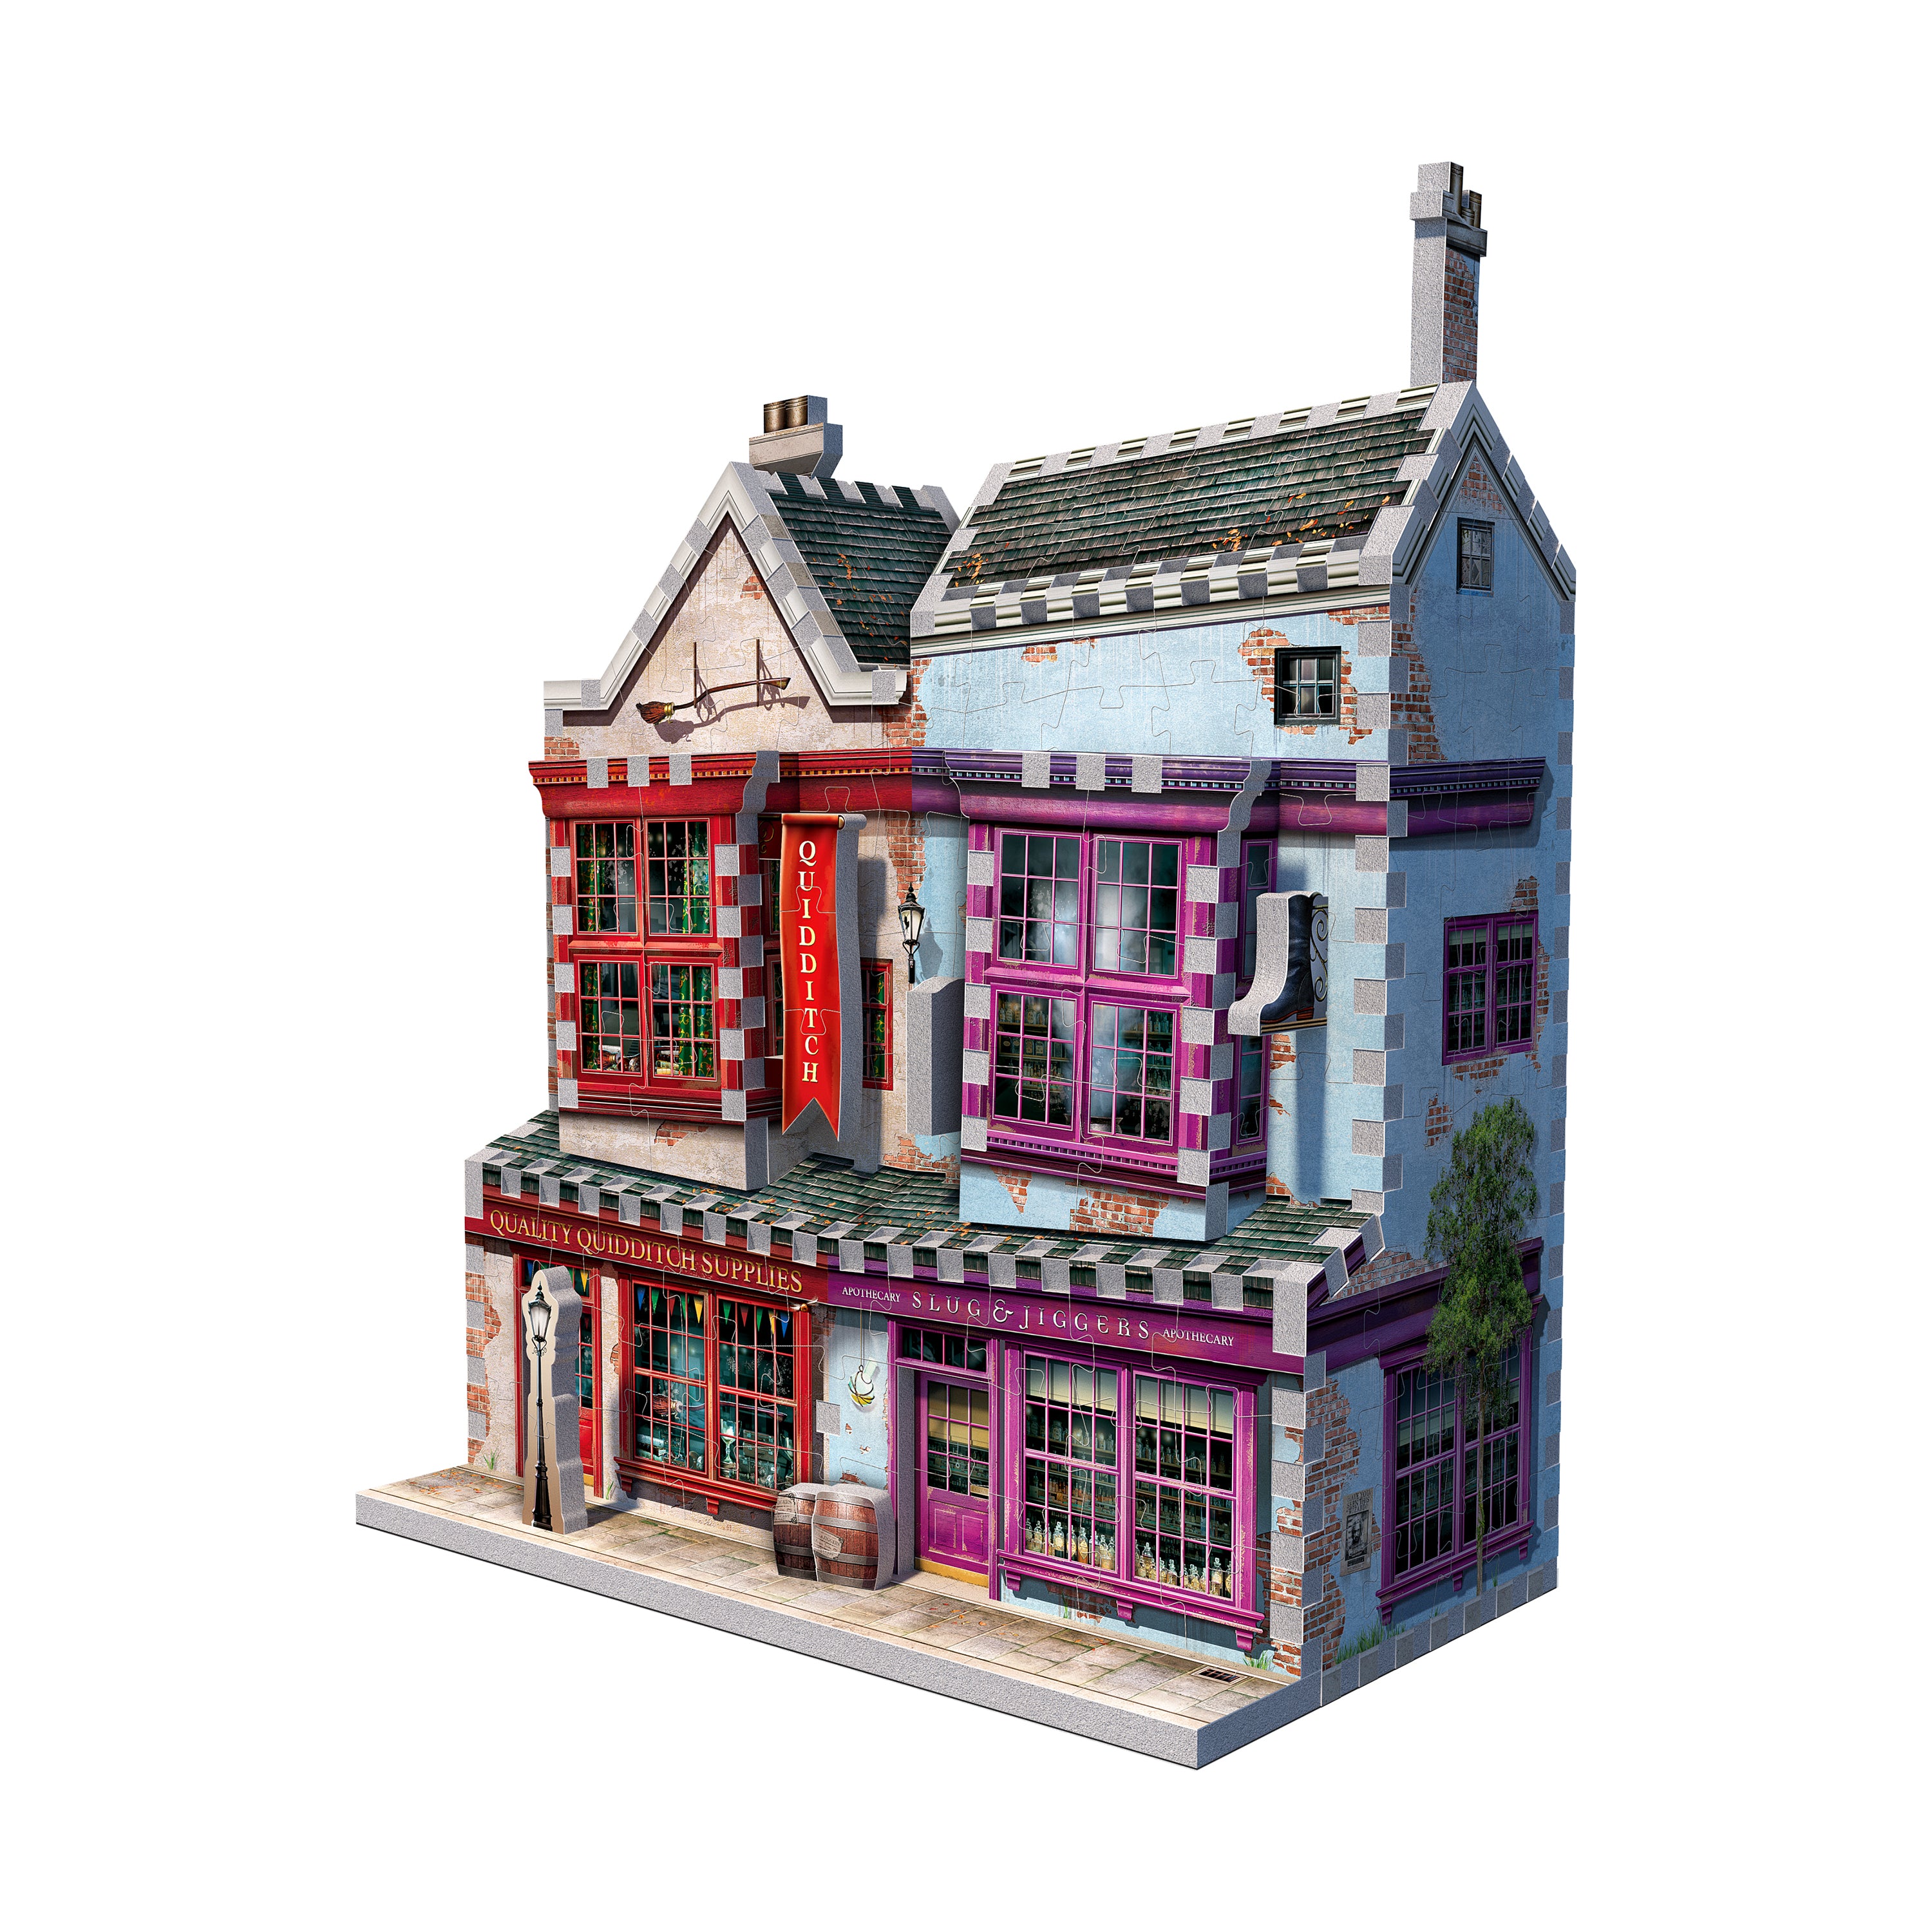 Harry Potter Diagon Alley Collection - Quality Quidditch Supplies & Slug & Jiggers 3D Puzzle: 305 Pcs